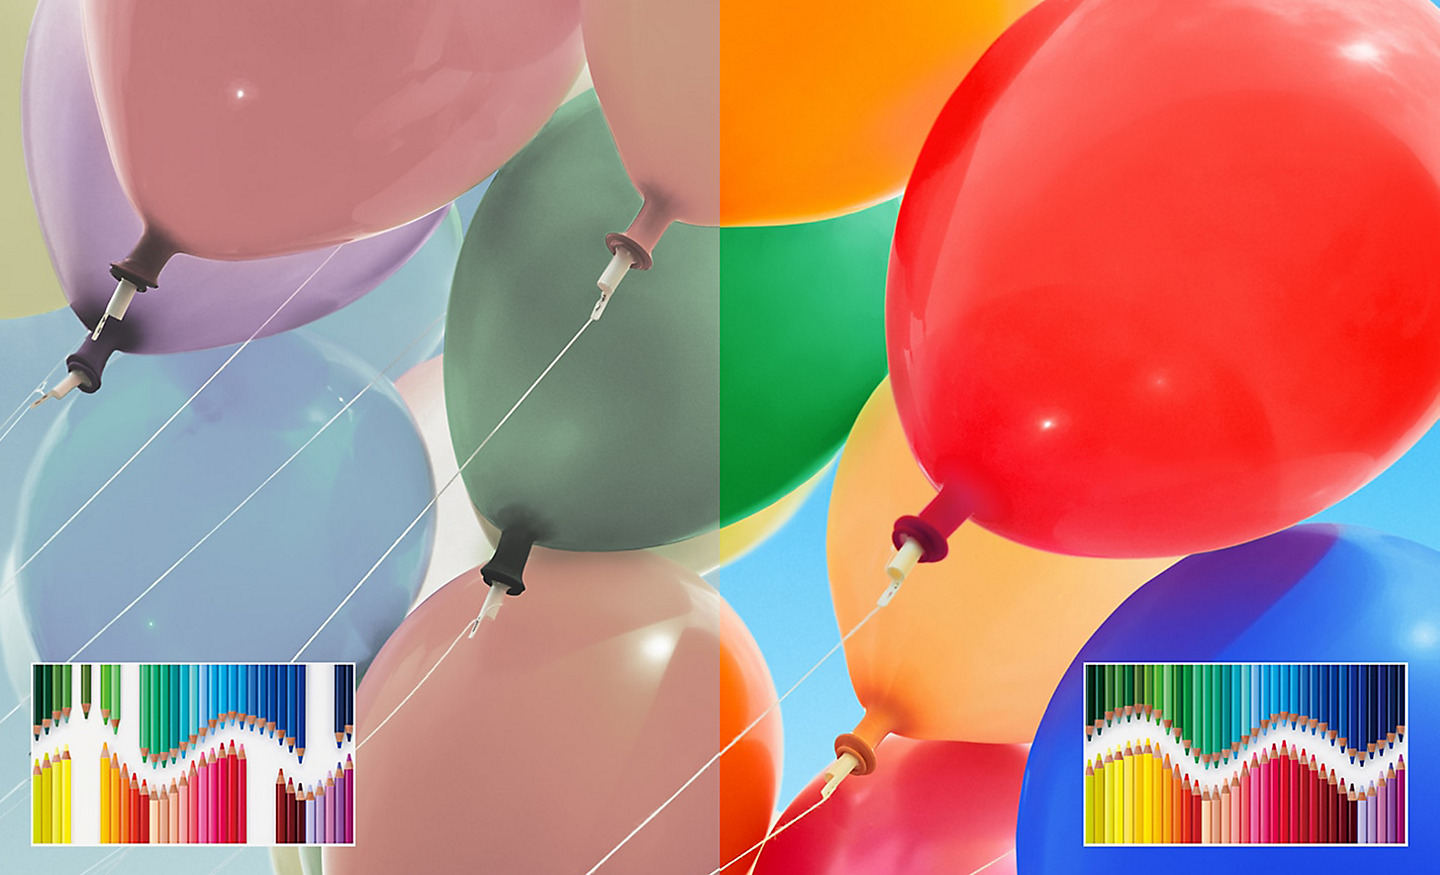 Delt skjermbilde av fargerike ballonger som viser forbedret lysstyrke og kontrast på høyre side